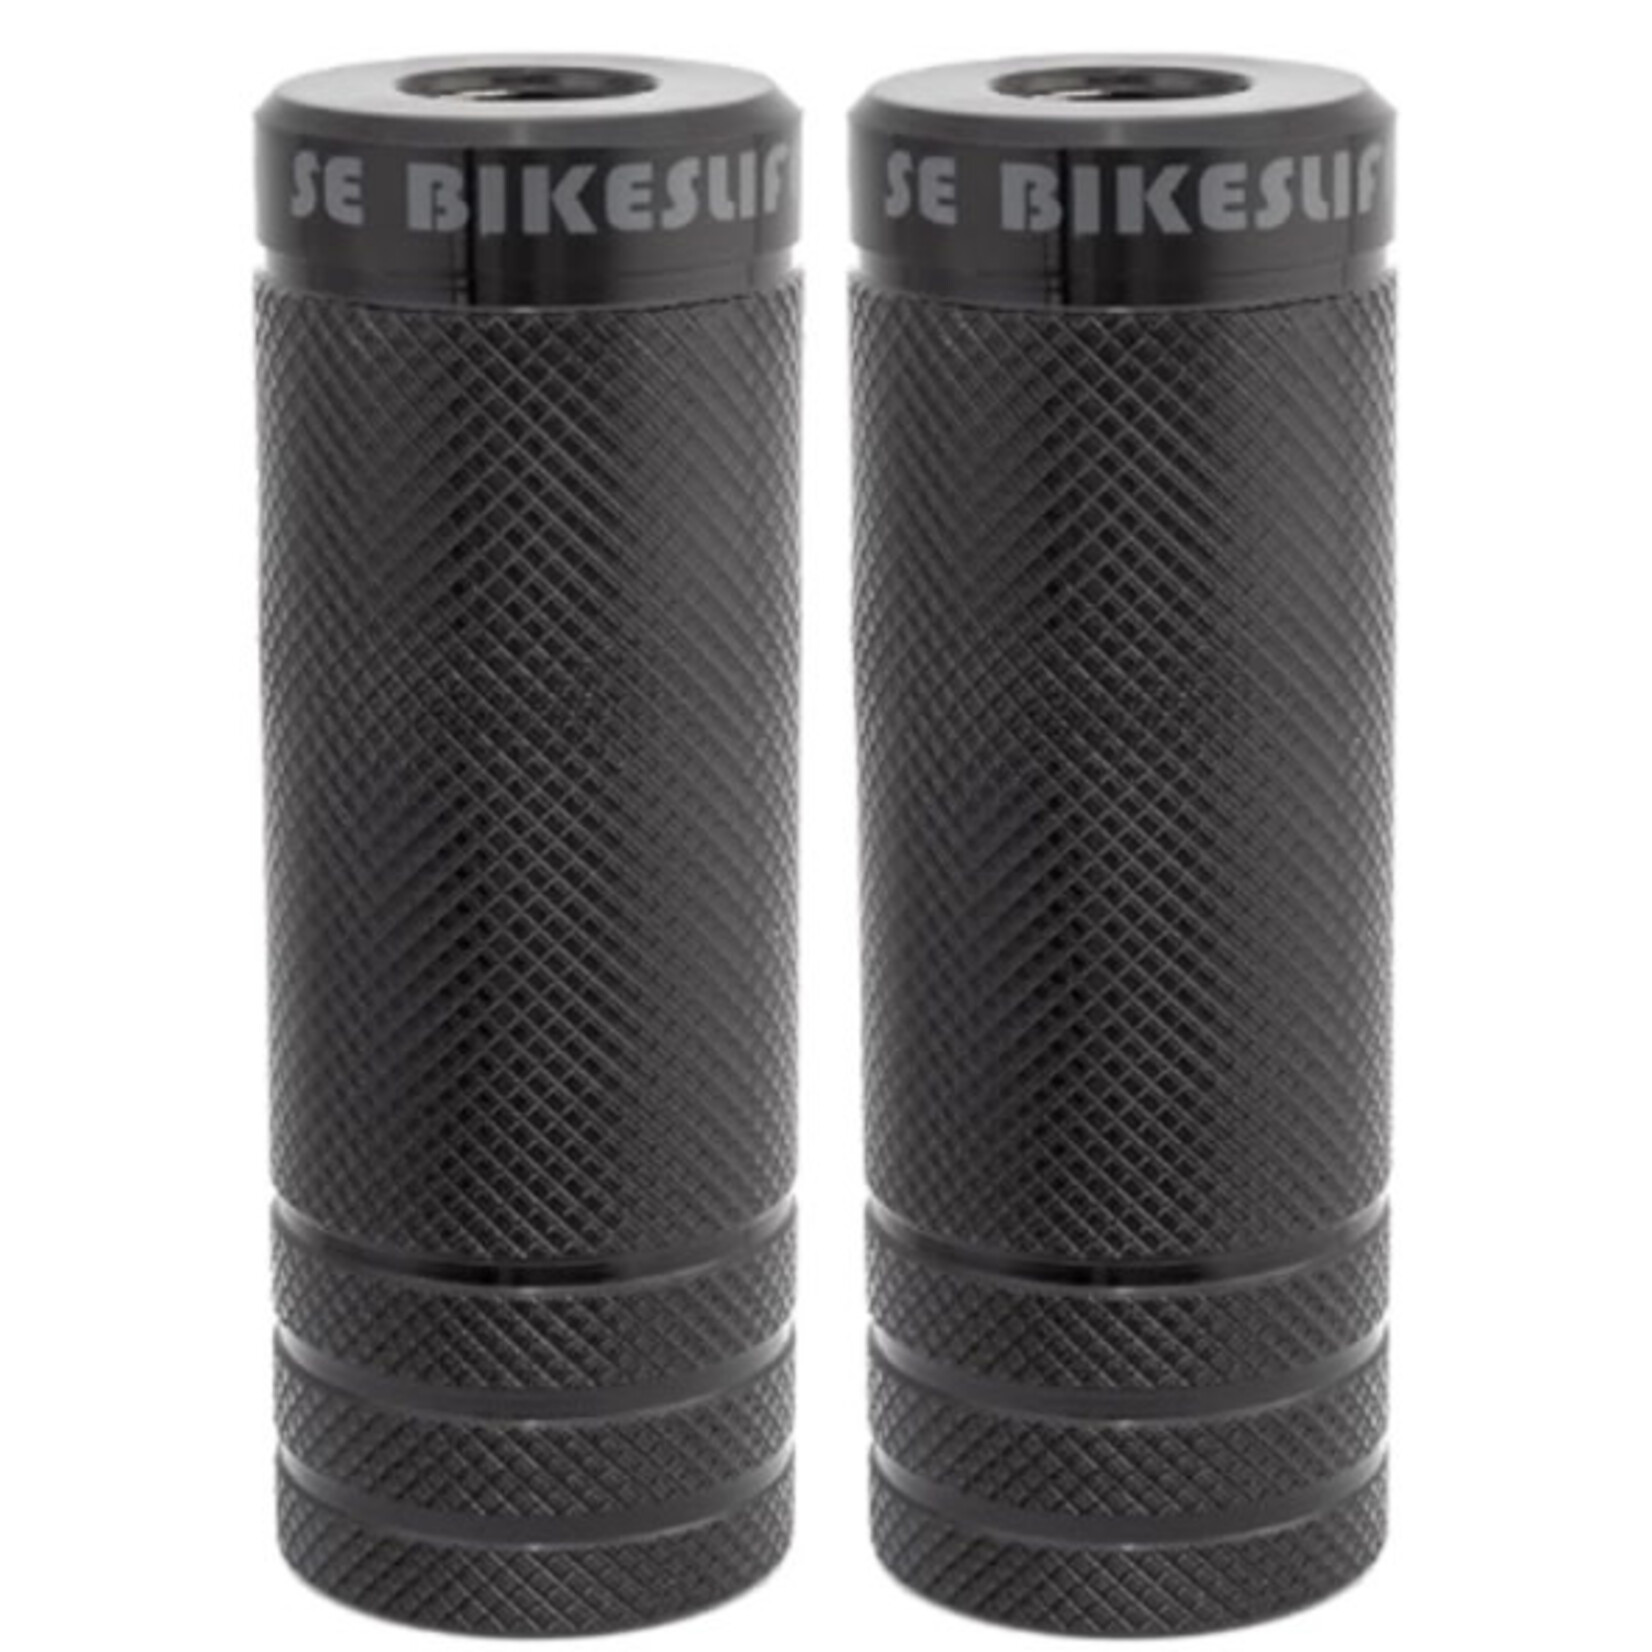 SE BIKES PEG SE BIKES- BK 3/8-14mm